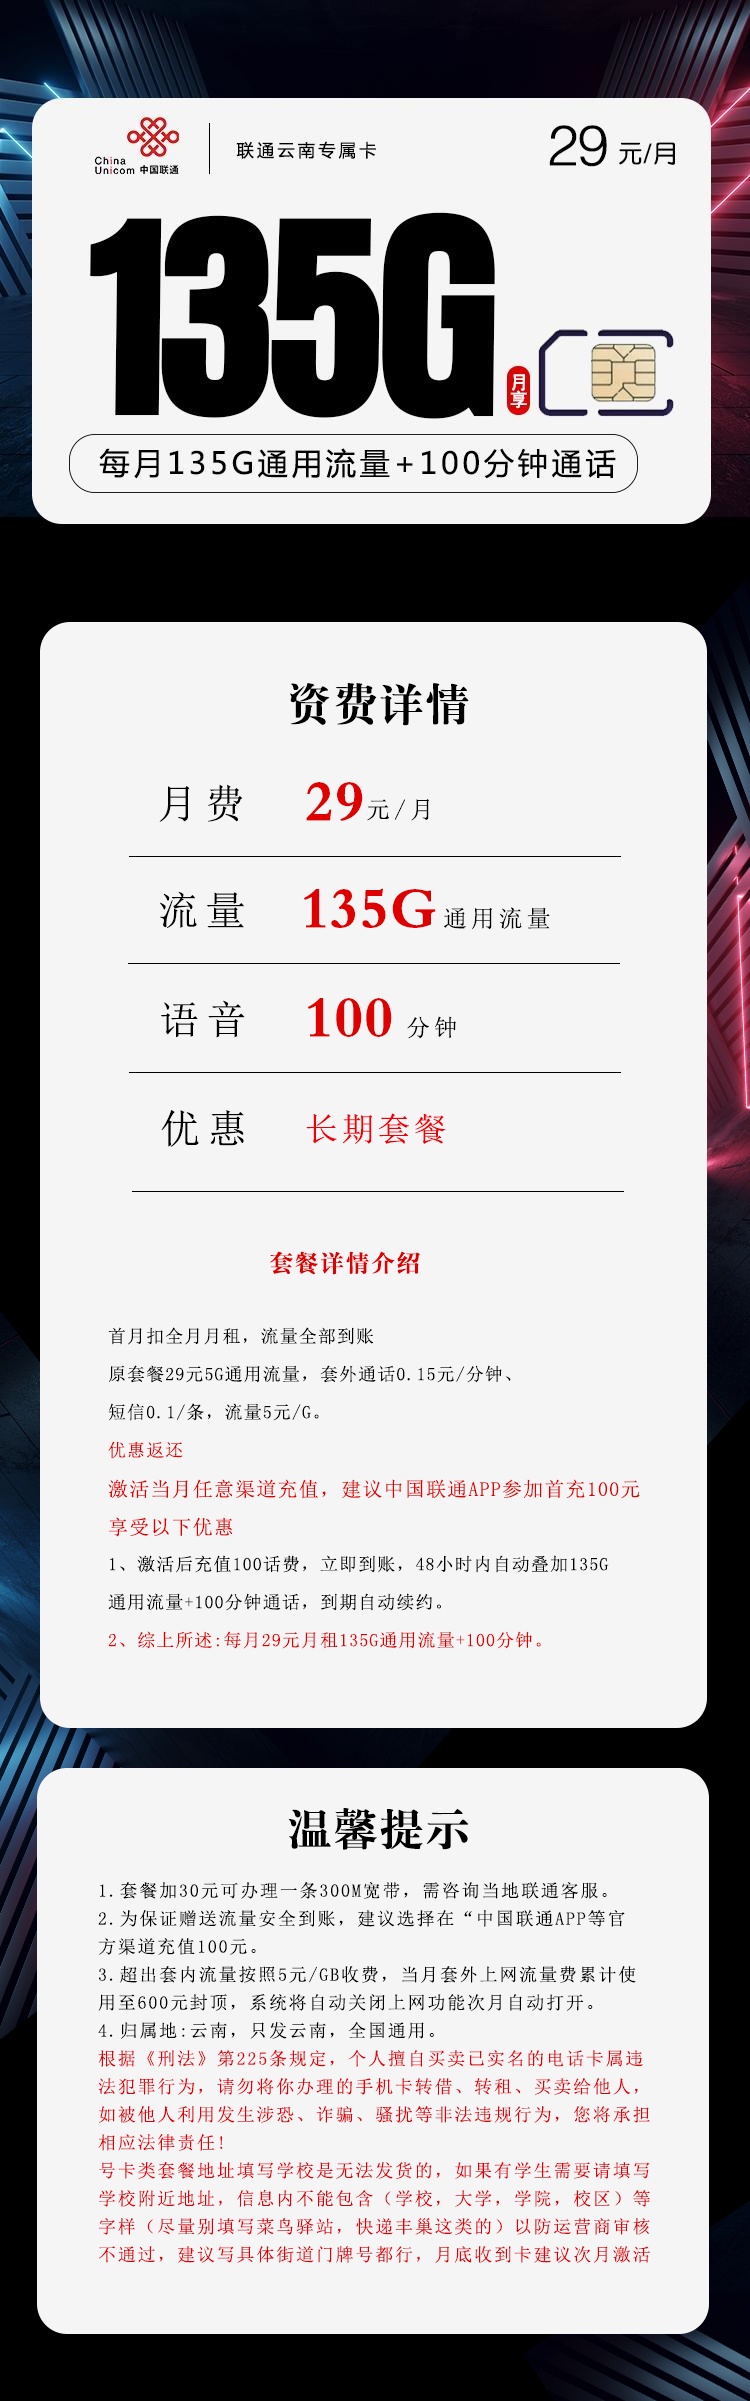 云南可以用的长期流量卡联通云南专属卡29元月租包135G通用流量+100分钟